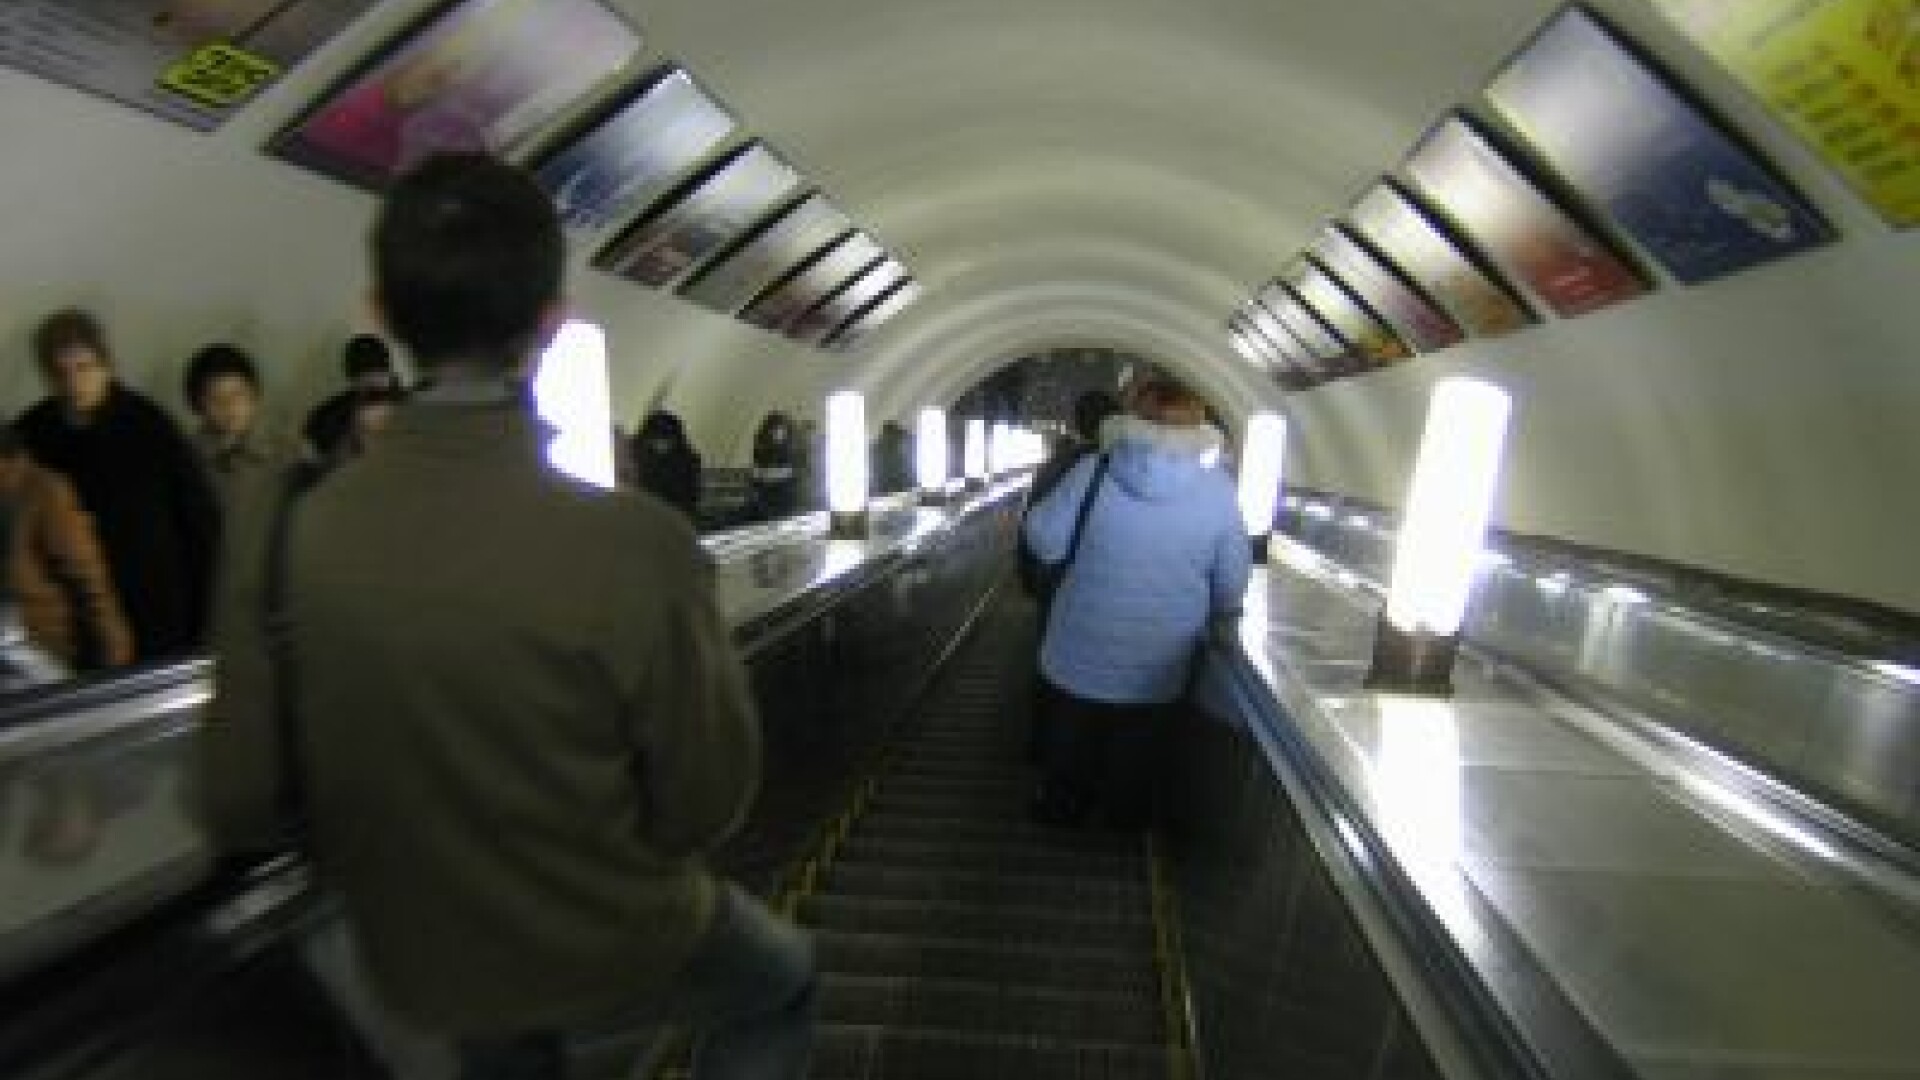 metrou, Moscova